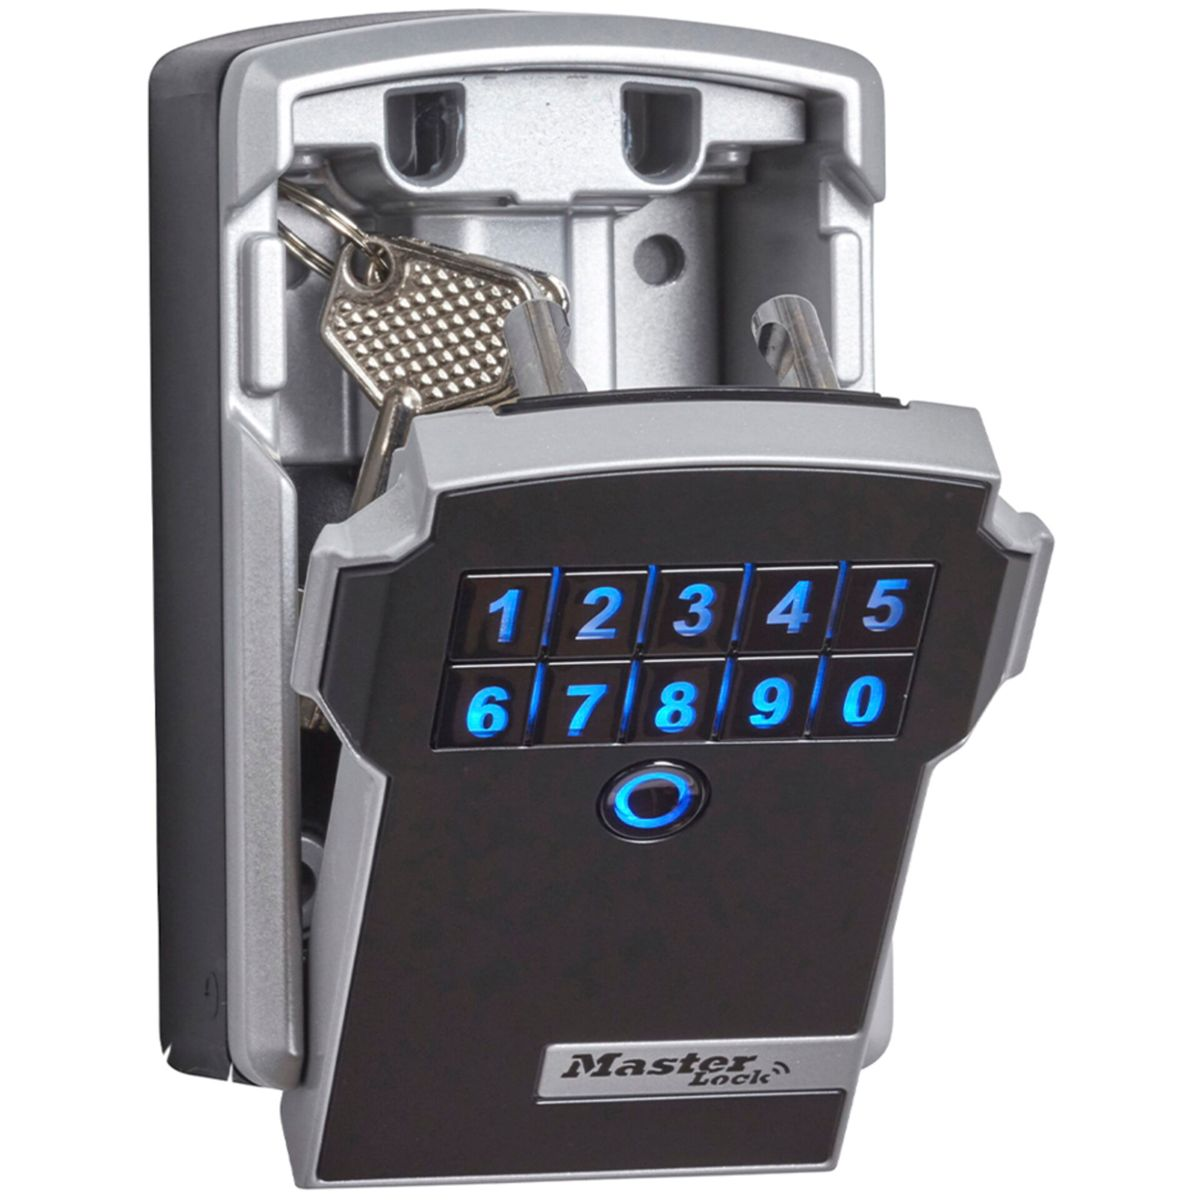 Schlüsseltresor grau Schlüsselkasten grau MASTERLOCK / 5441EURD schwarz Master schwarz Bluetooth Lock